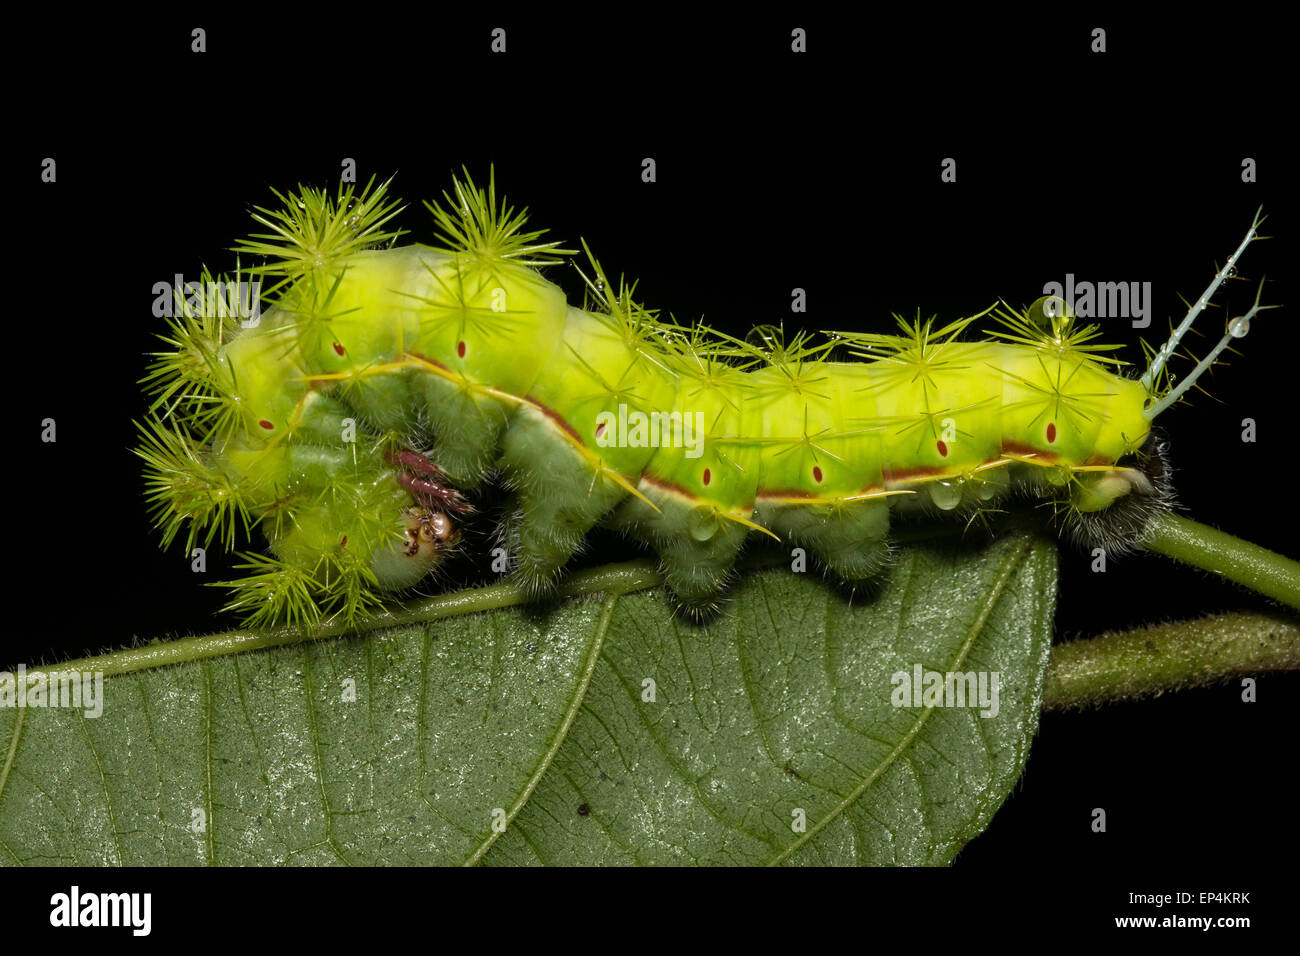 Une tortue à Caterpillar a l'air menaçant avec ses nombreuses pointes urticantes et épines. Banque D'Images